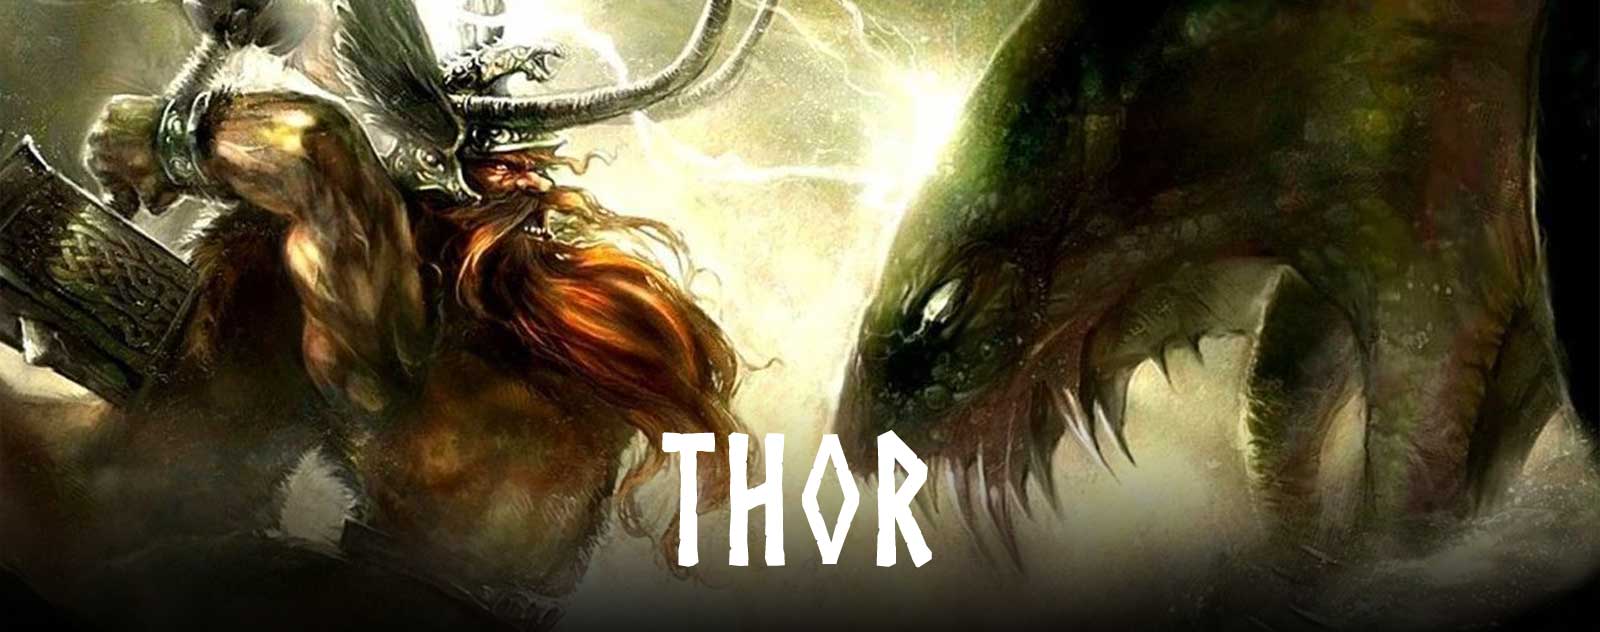 viking god thor